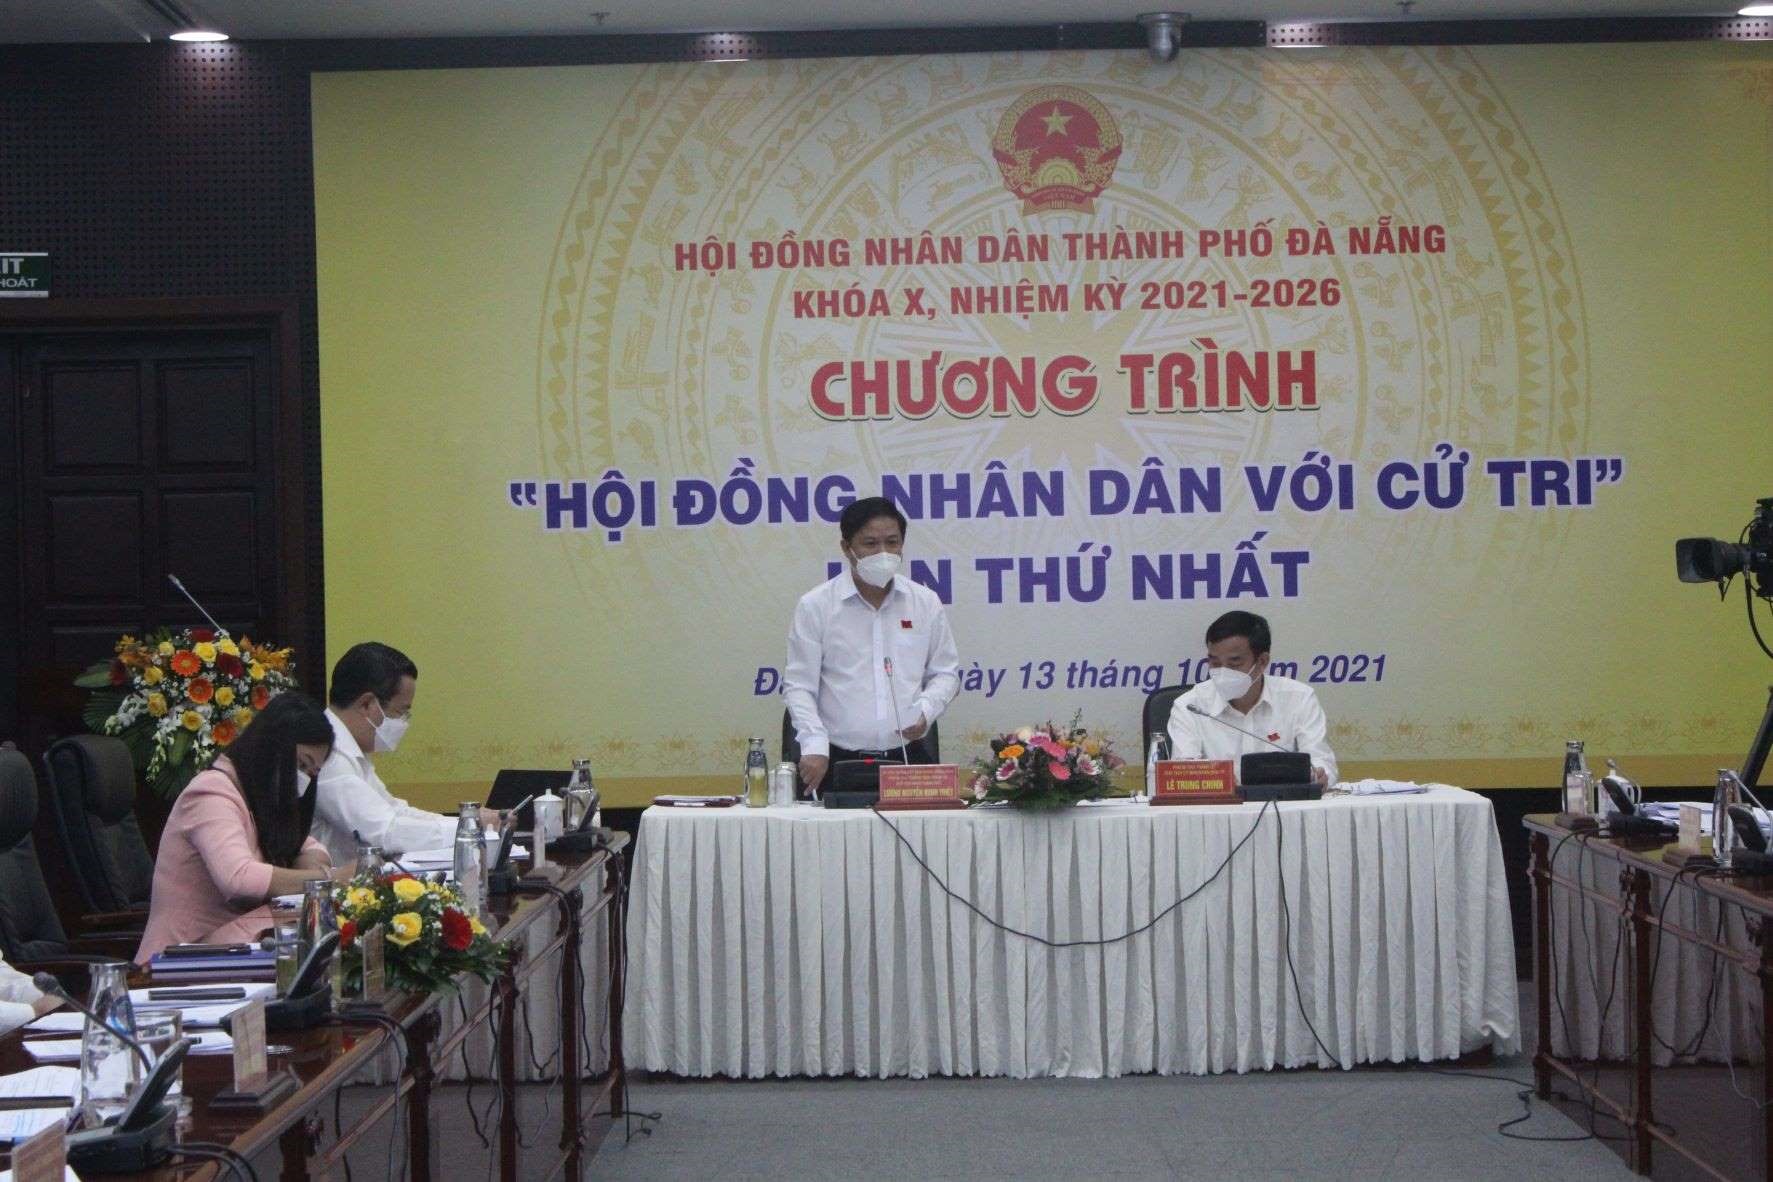 Chương trình “Hội đồng nhân dân với cử tri” lần thứ nhất do HĐND TP. Đà Nẵng tổ chức ngày 13/10 . Ảnh: VGP/Minh Trang